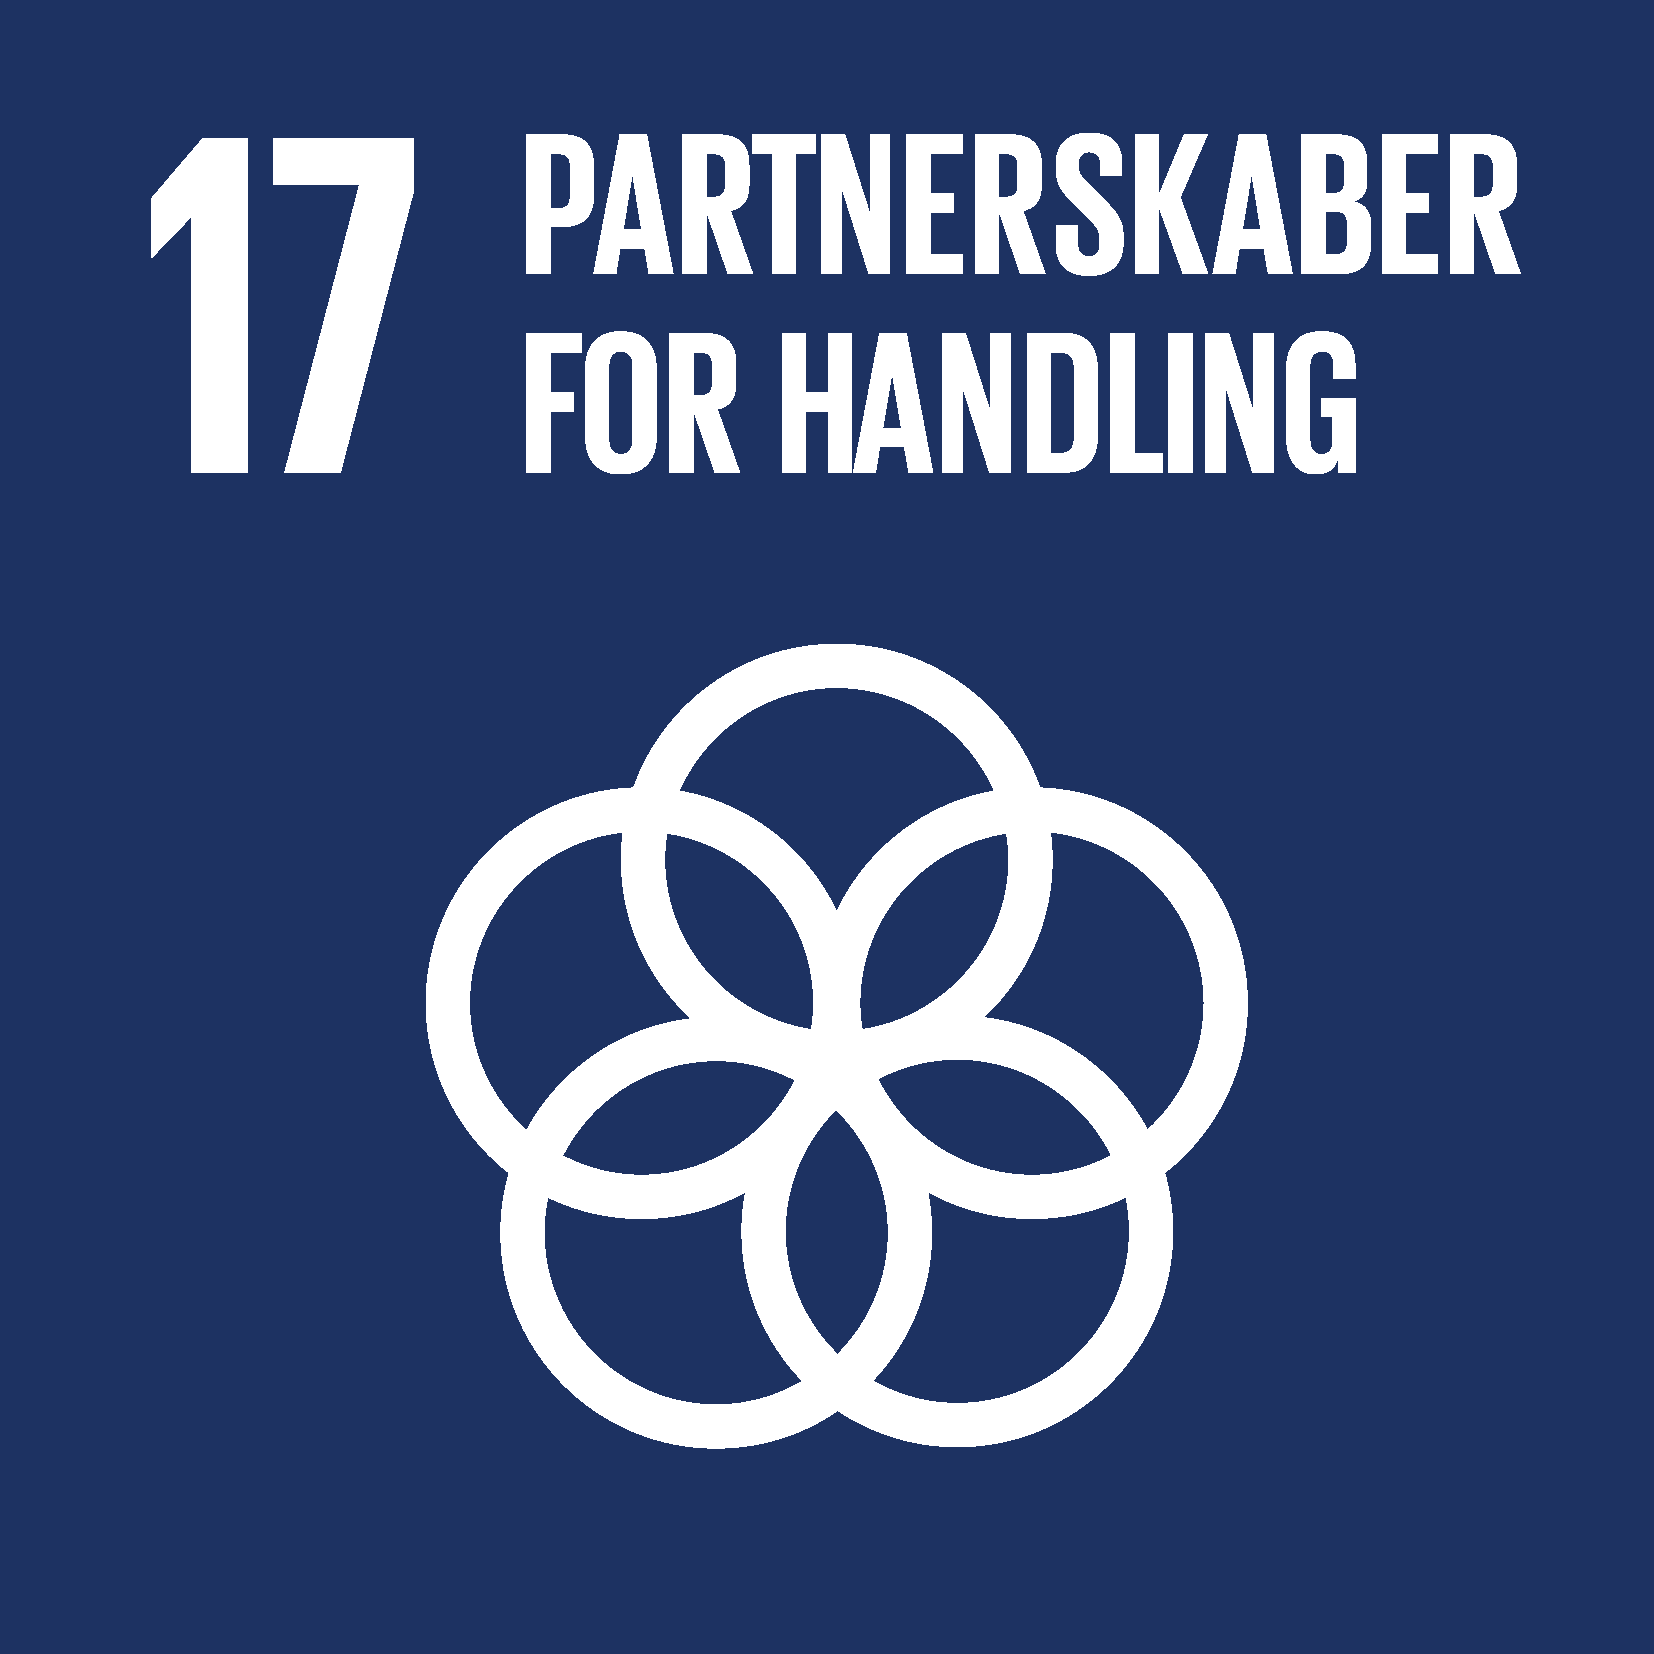 FN verdensmål 17 partnerskab for handling